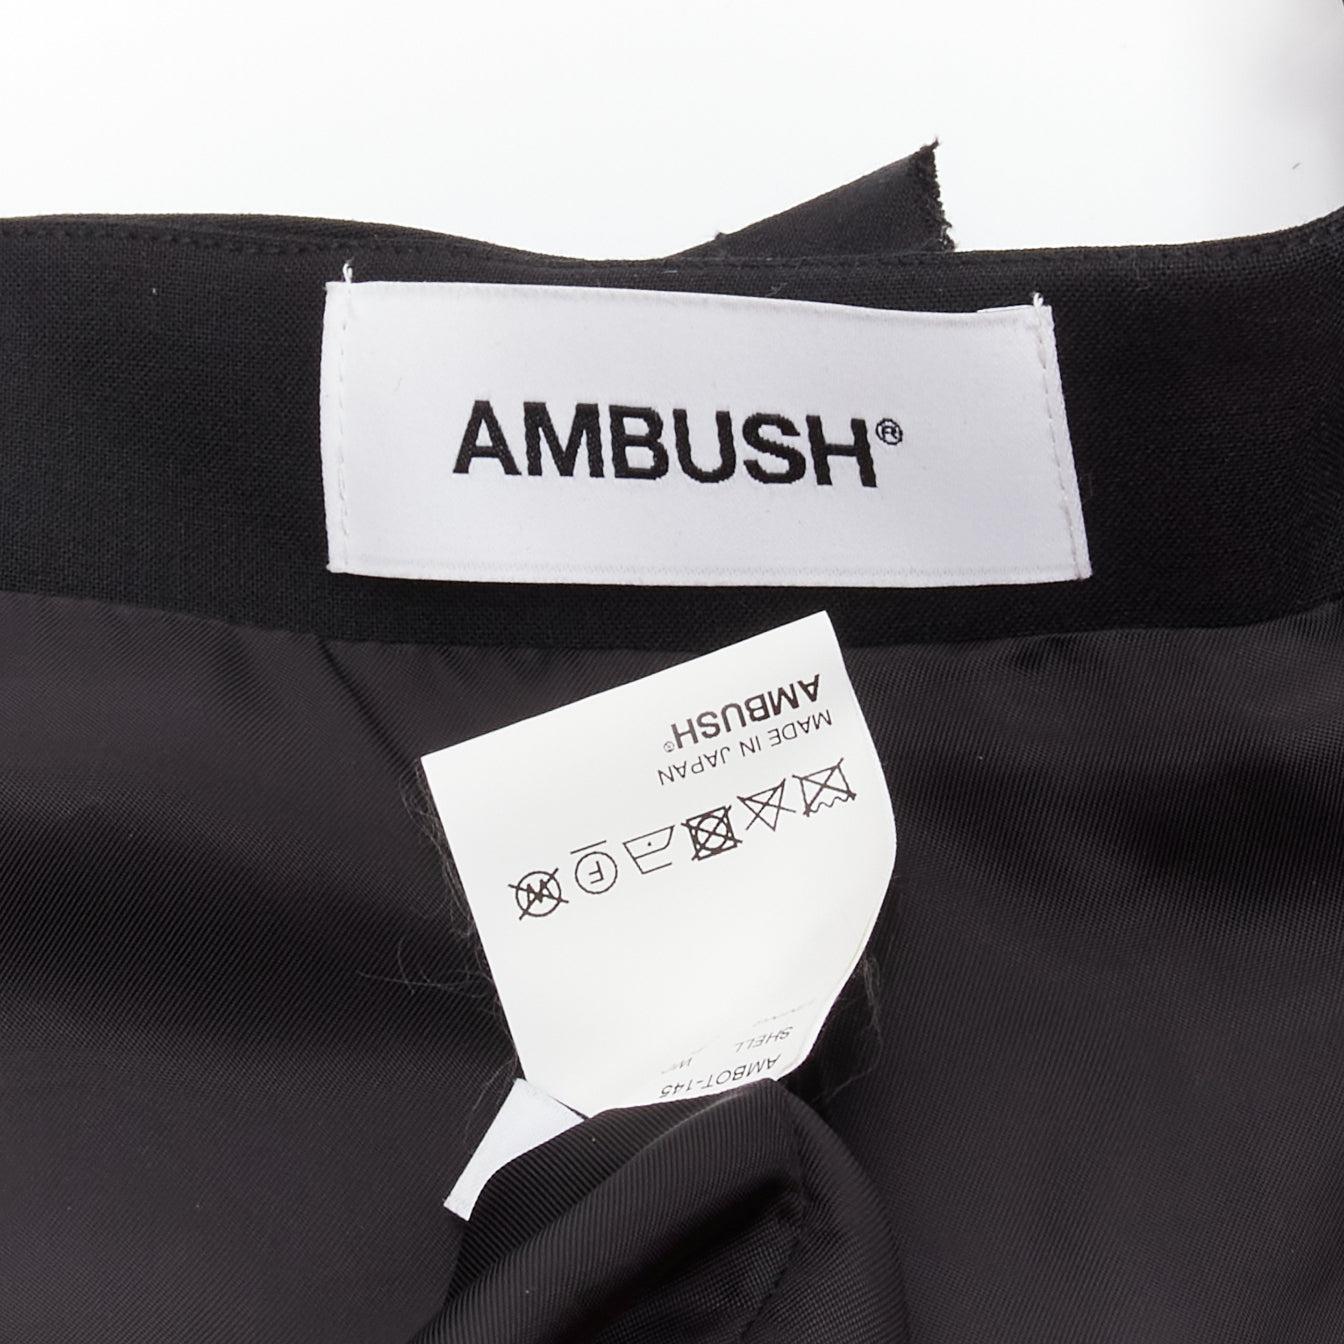 AMBUSH wool studded leather straps cold shoulder deconstructed blazer dress JP1 For Sale 3